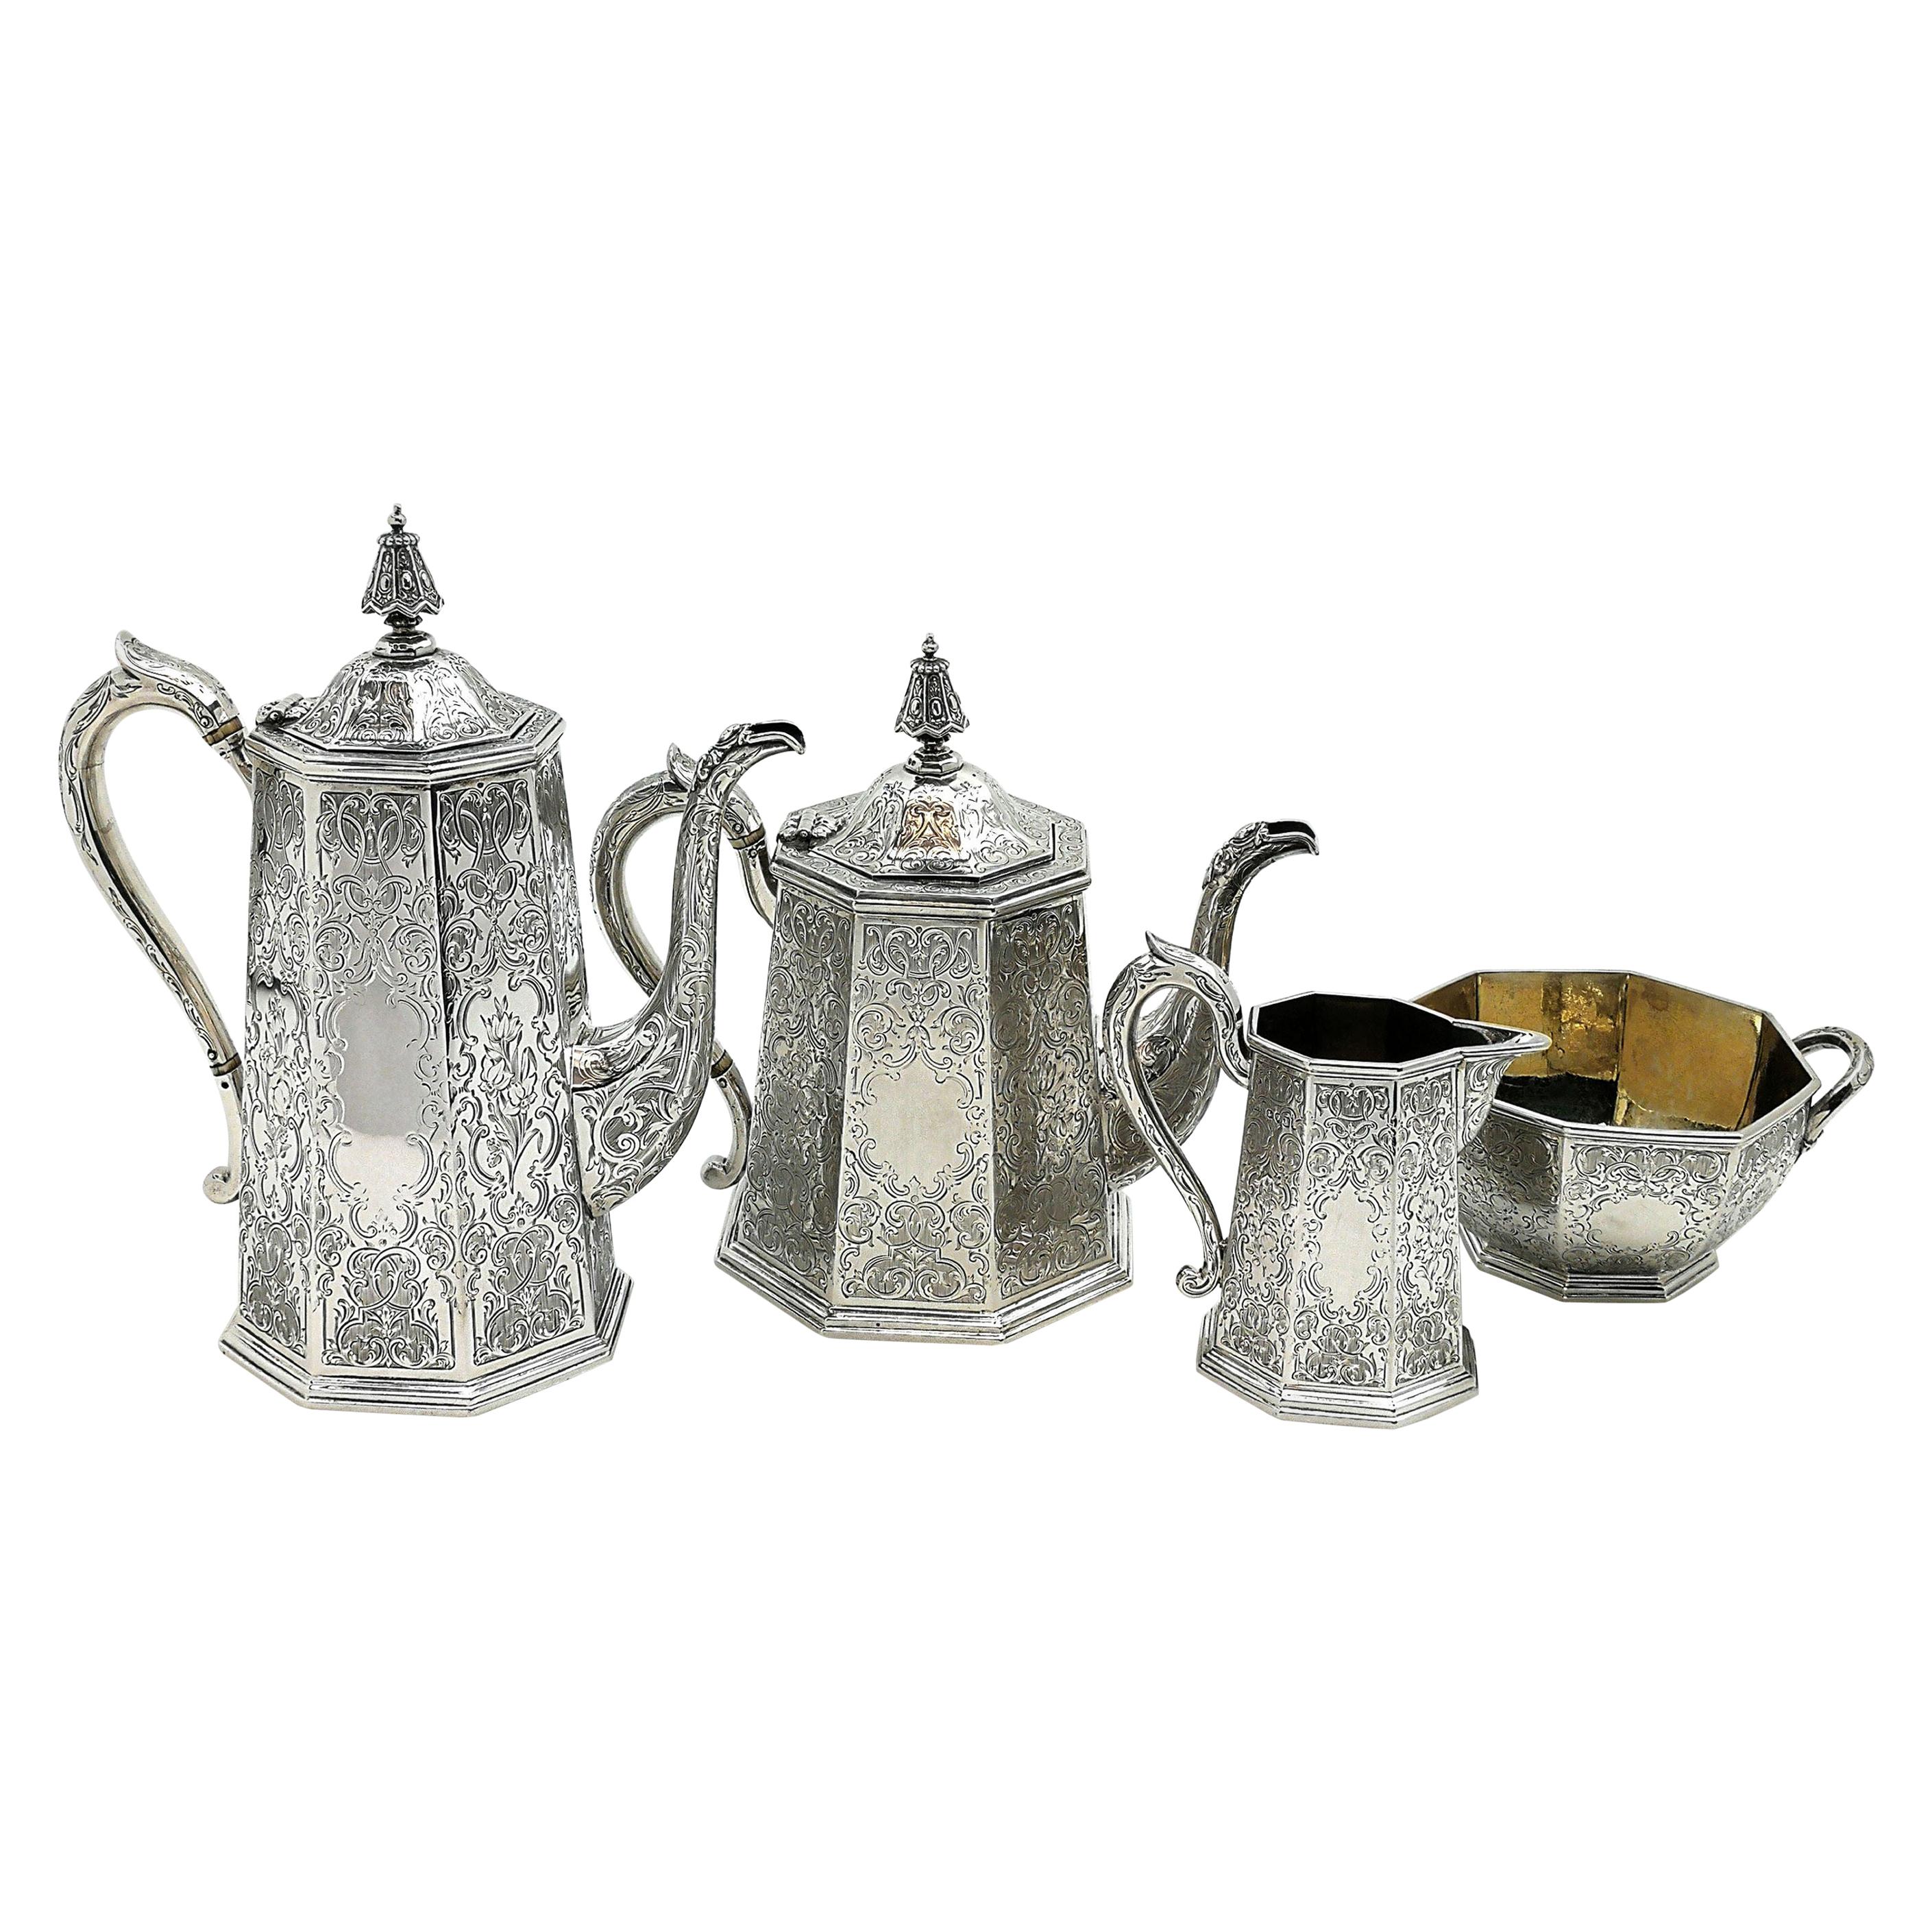 Antique Victorian Sterling Silver Four-Piece Tea Set 1854 Teapot Coffee Pot